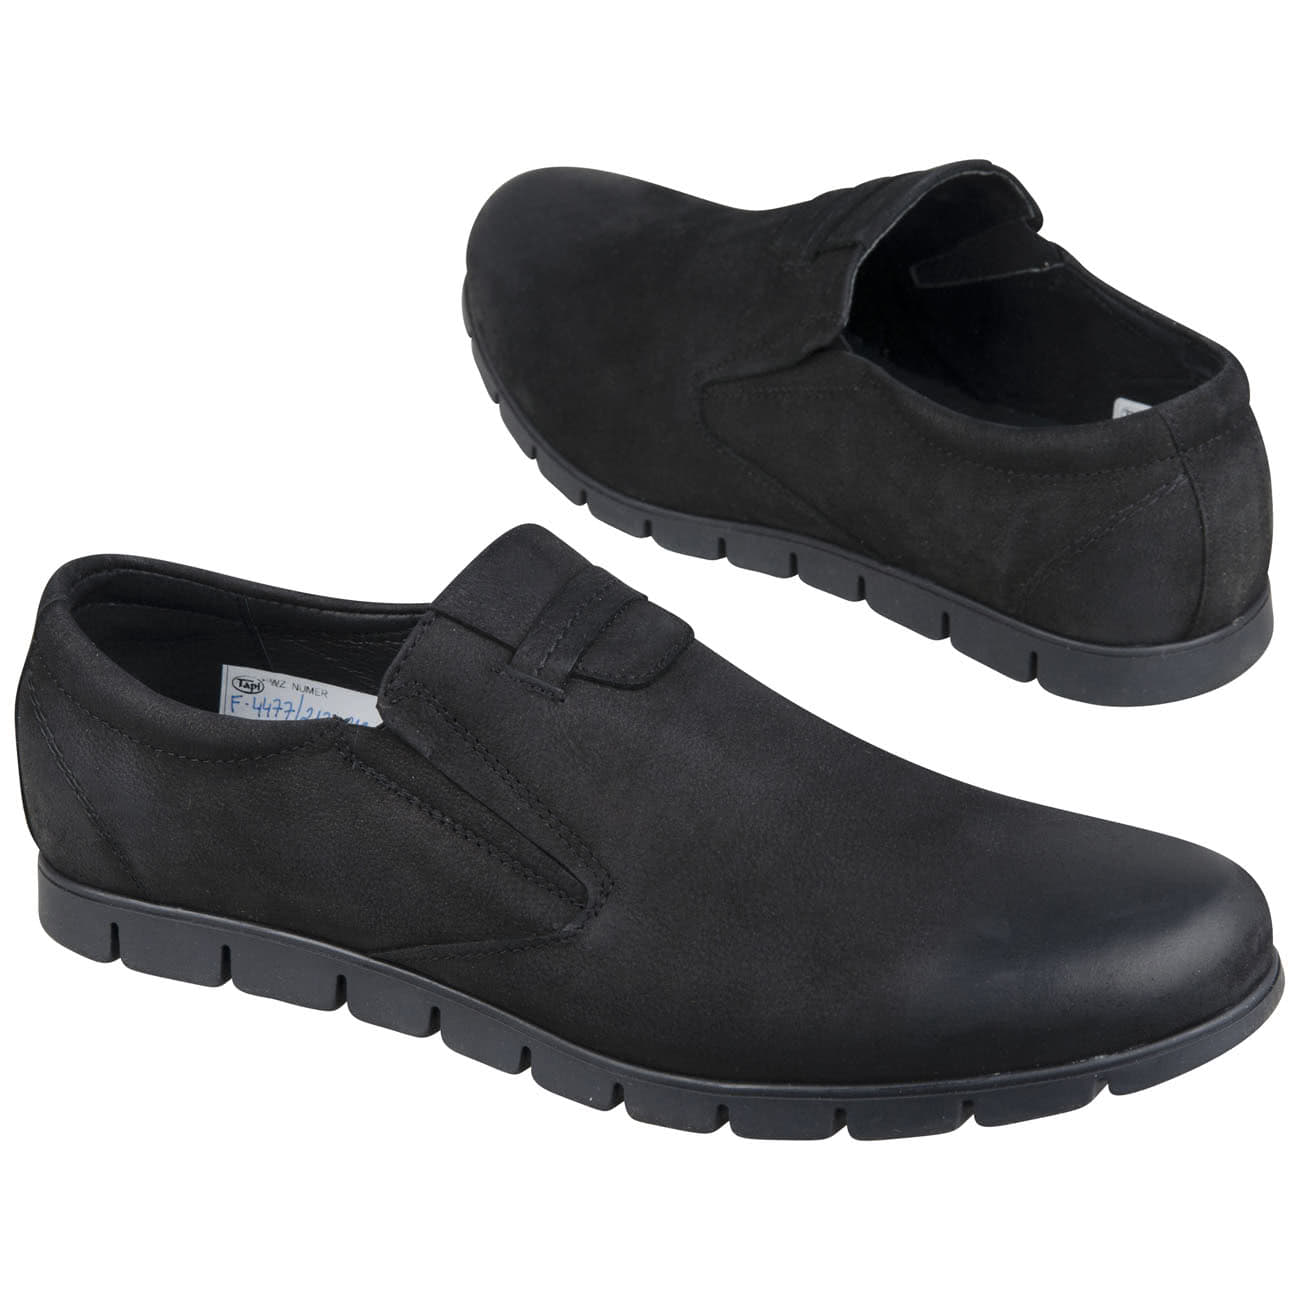 Удобные мужские ботинки без шнурков из натурального нубука на плоскойподошве купить в интернет магазине Kwinto